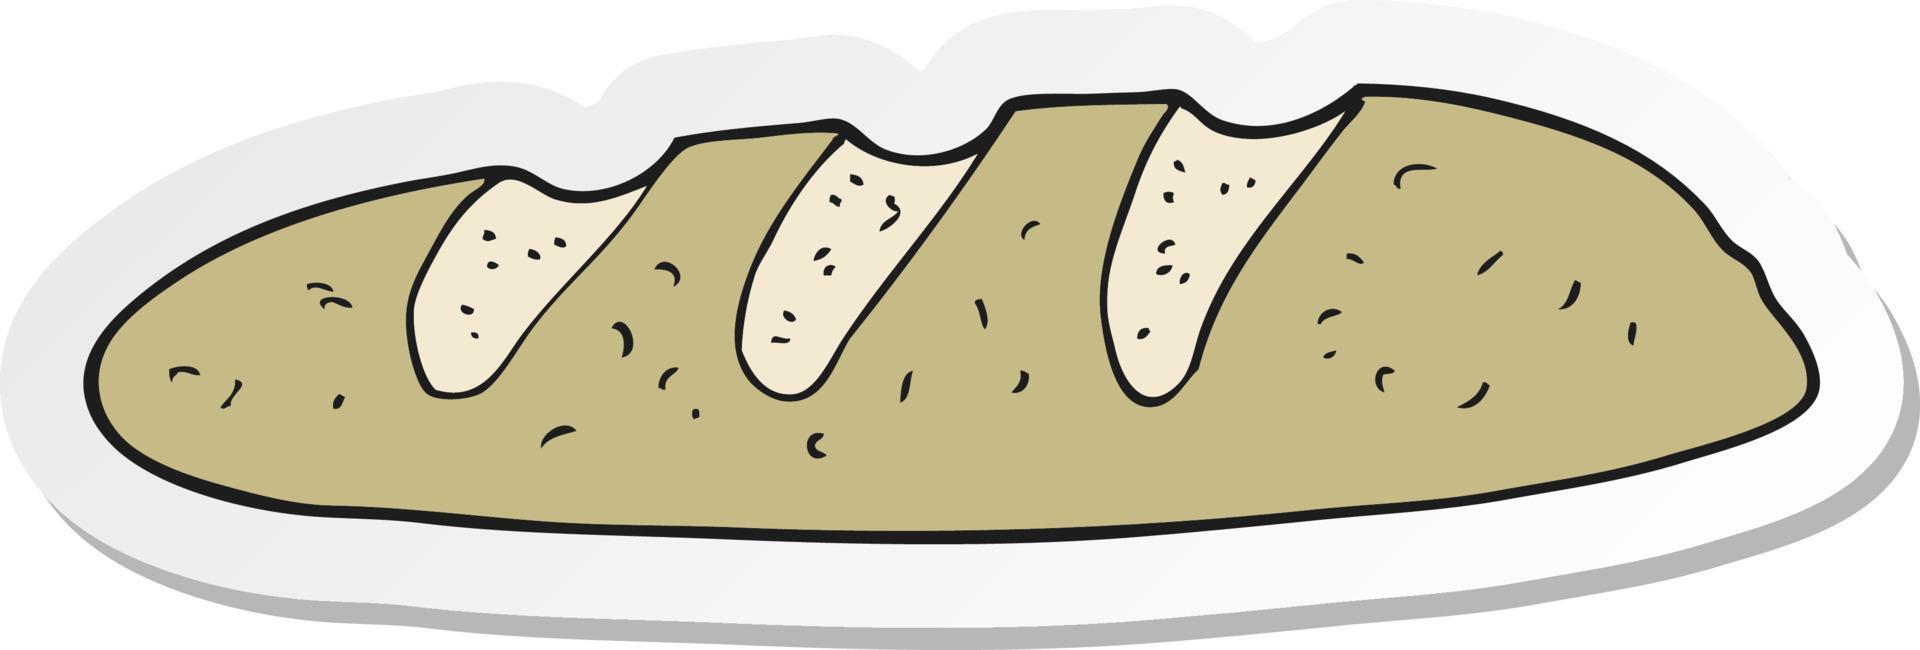 klistermärke av en tecknad brödlimpa vektor